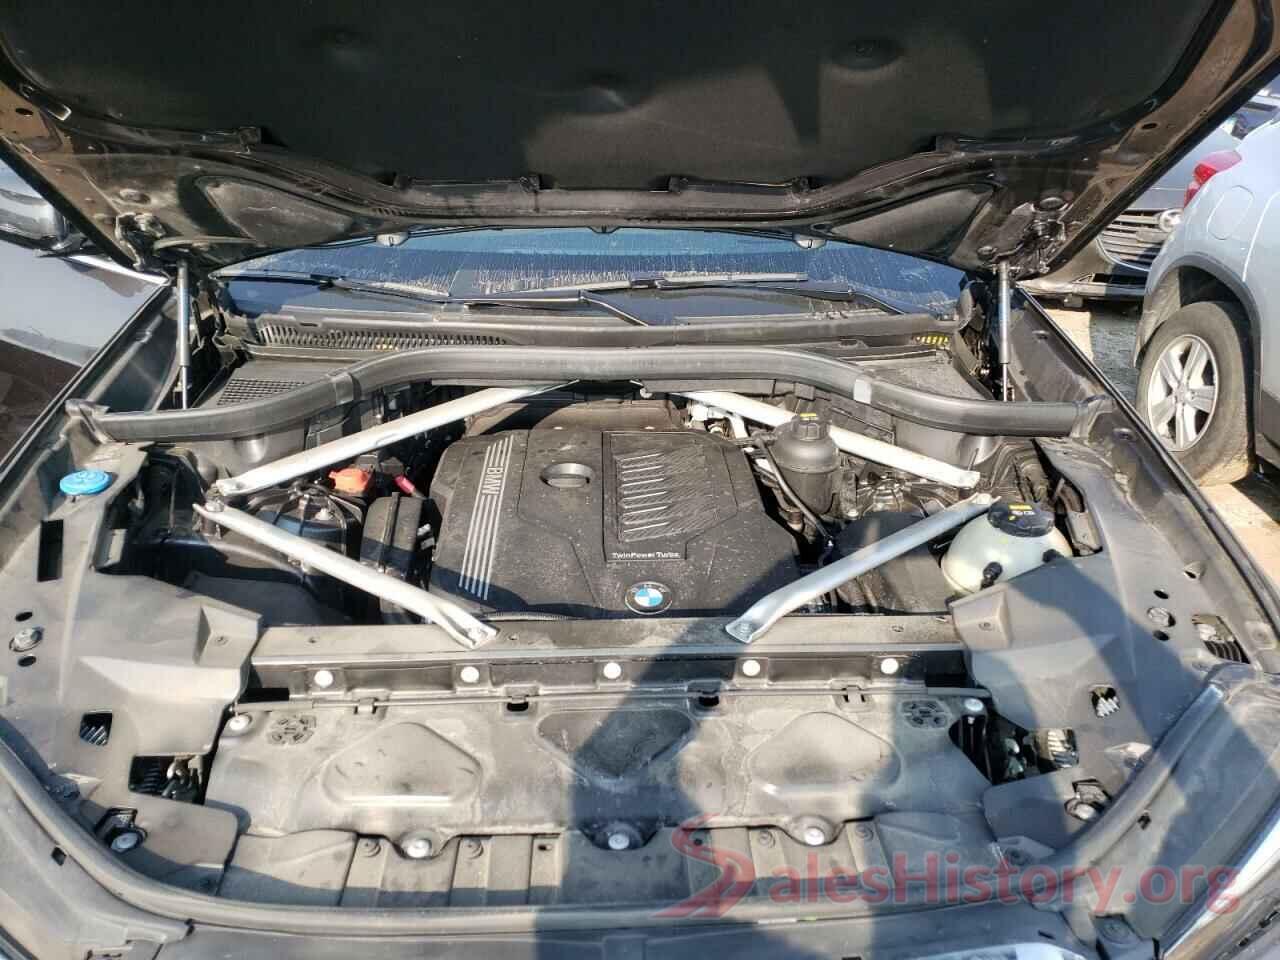 5UXCR6C51KLL63047 2019 BMW X5